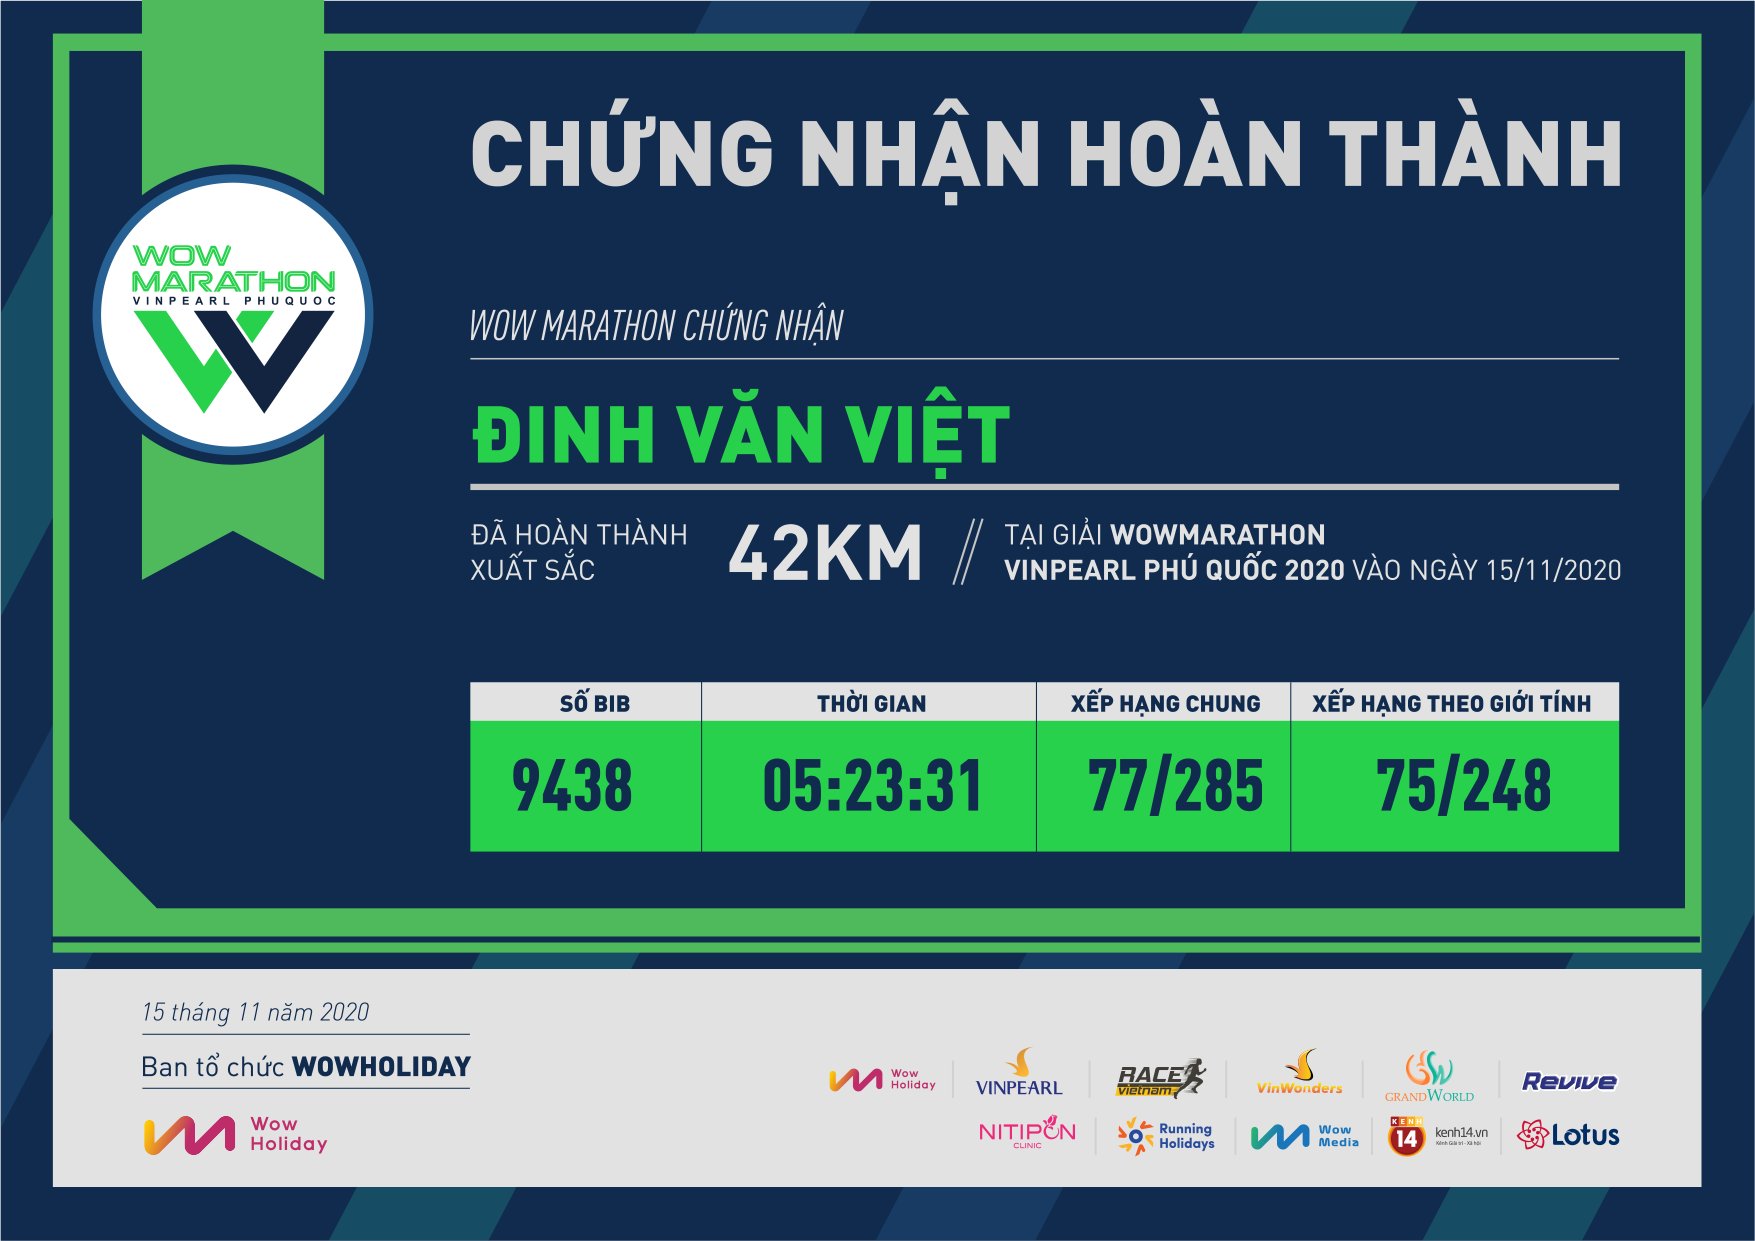 9438 - Đinh Văn Việt